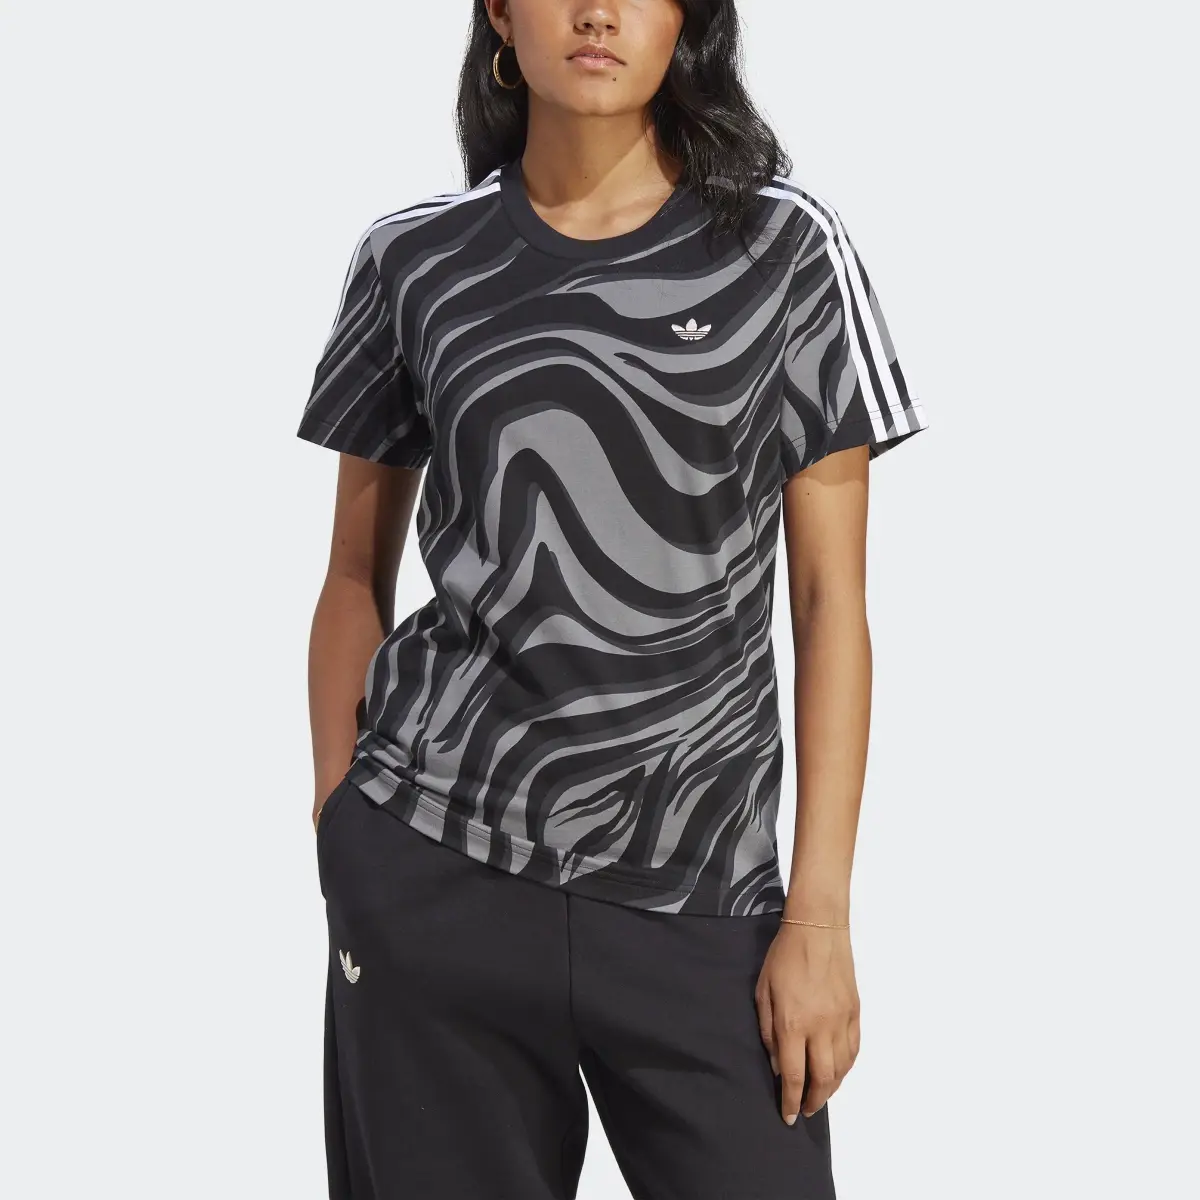 Adidas T-shirt à imprimé animal abstrait intégral. 1